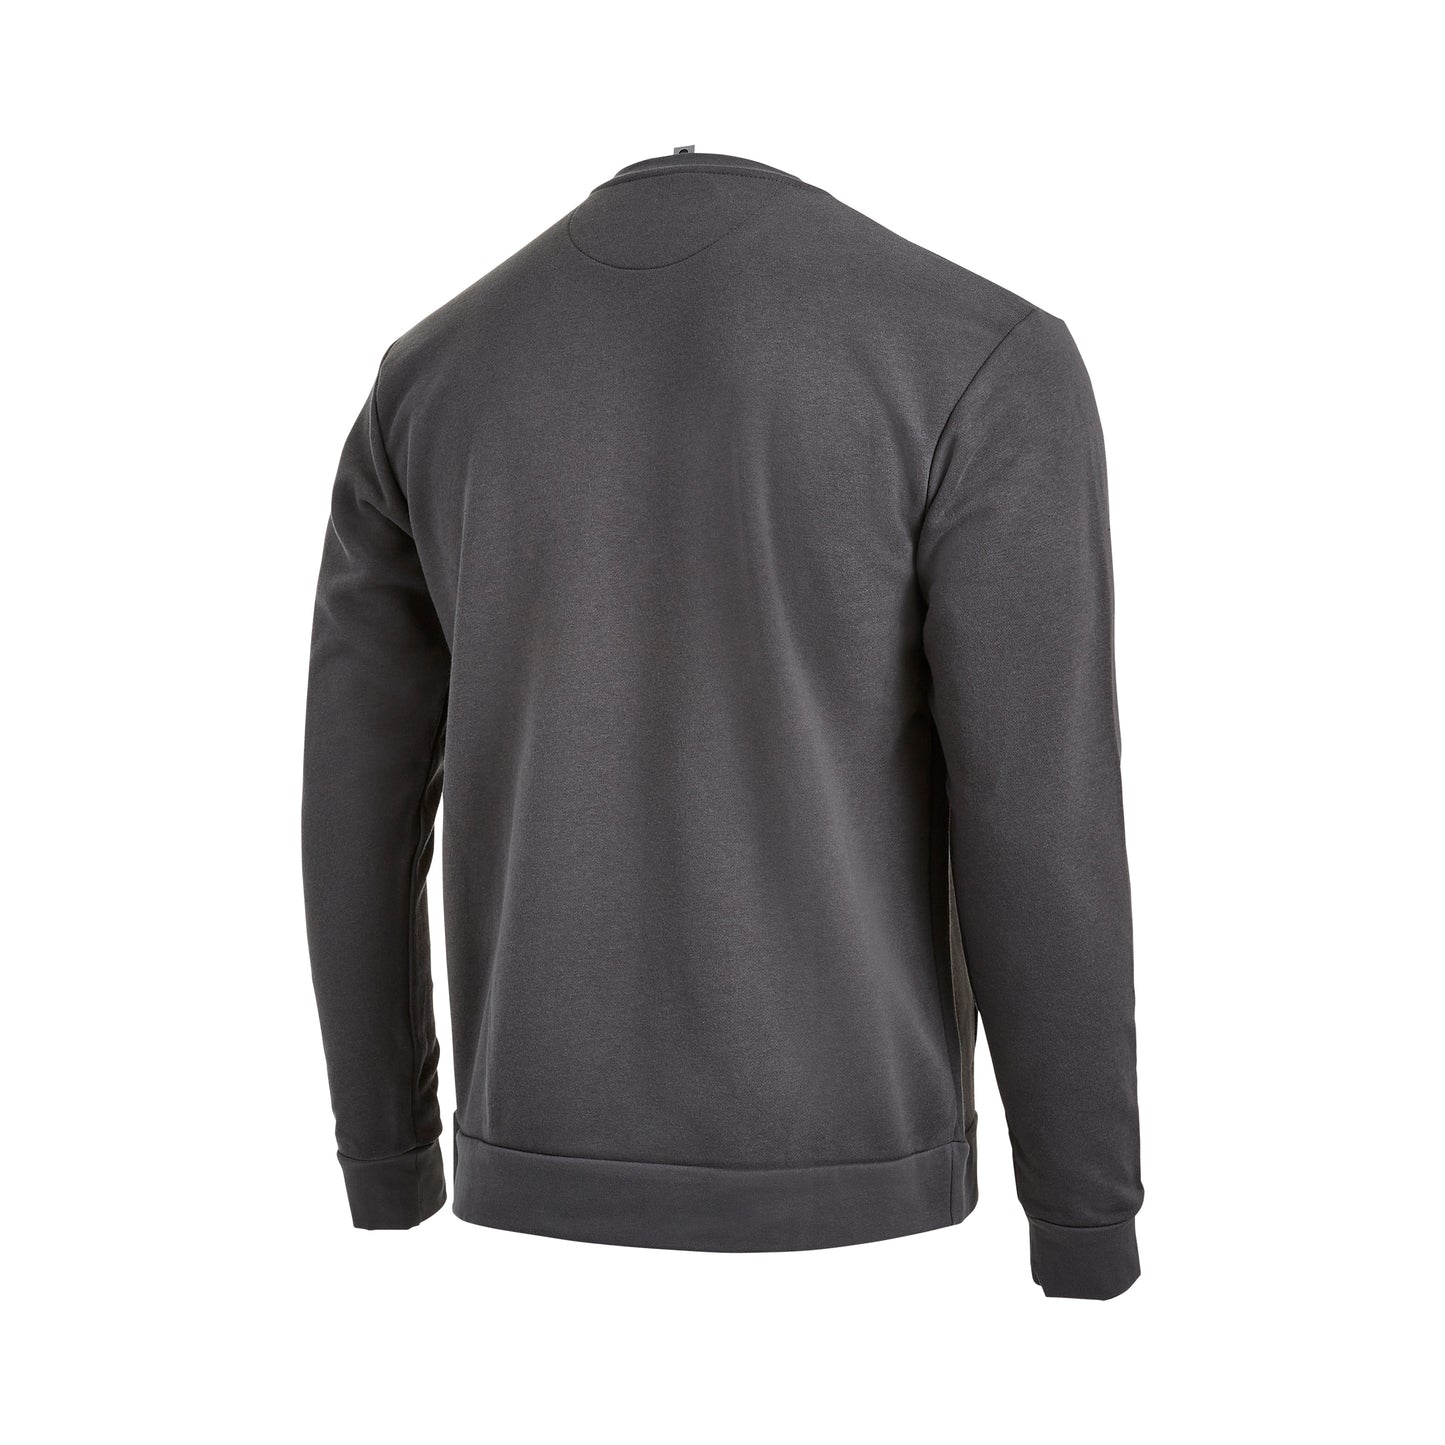 Next Level 1895 Pocket Unisex Sweatshirt